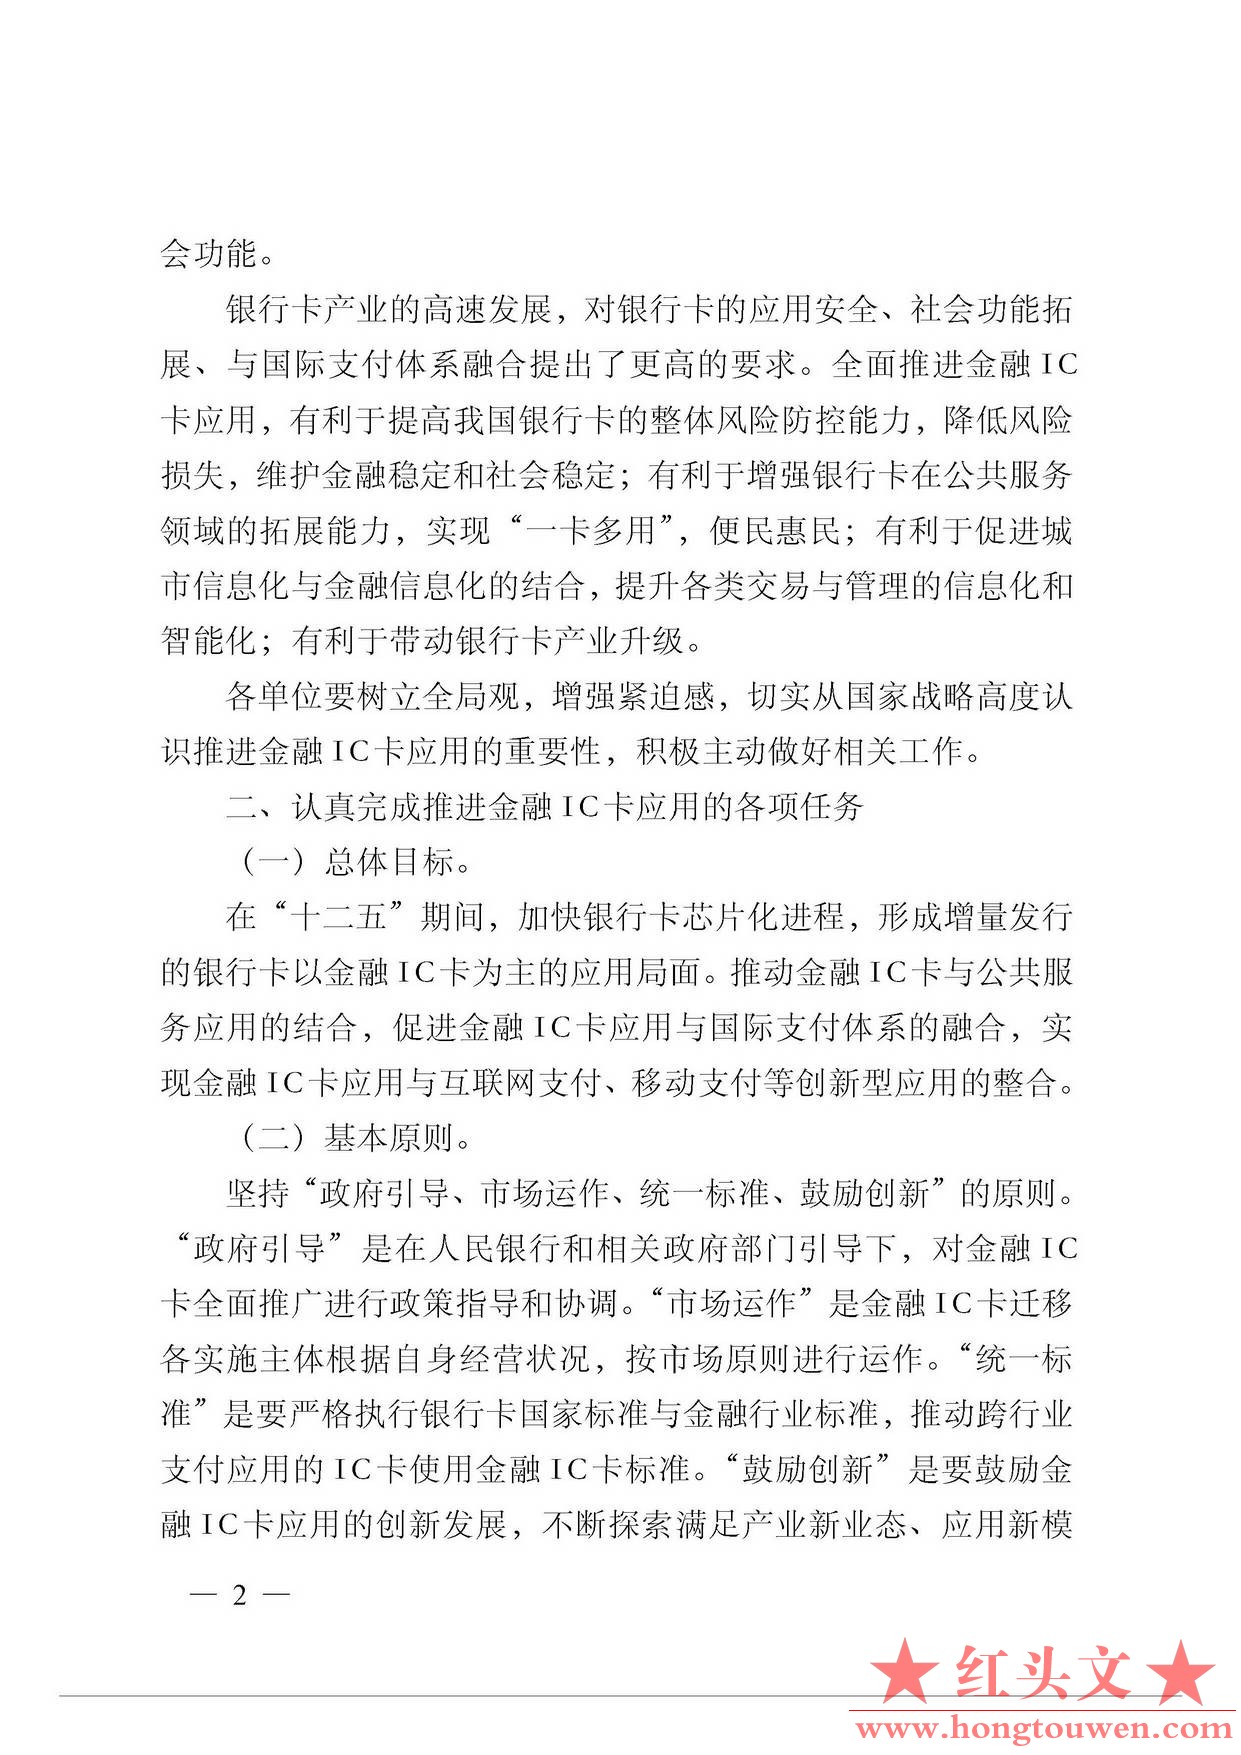 银发[2011]64号-中国人民银行关于推进金融IC卡应用工作的意见_页面_2.jpg.jpg